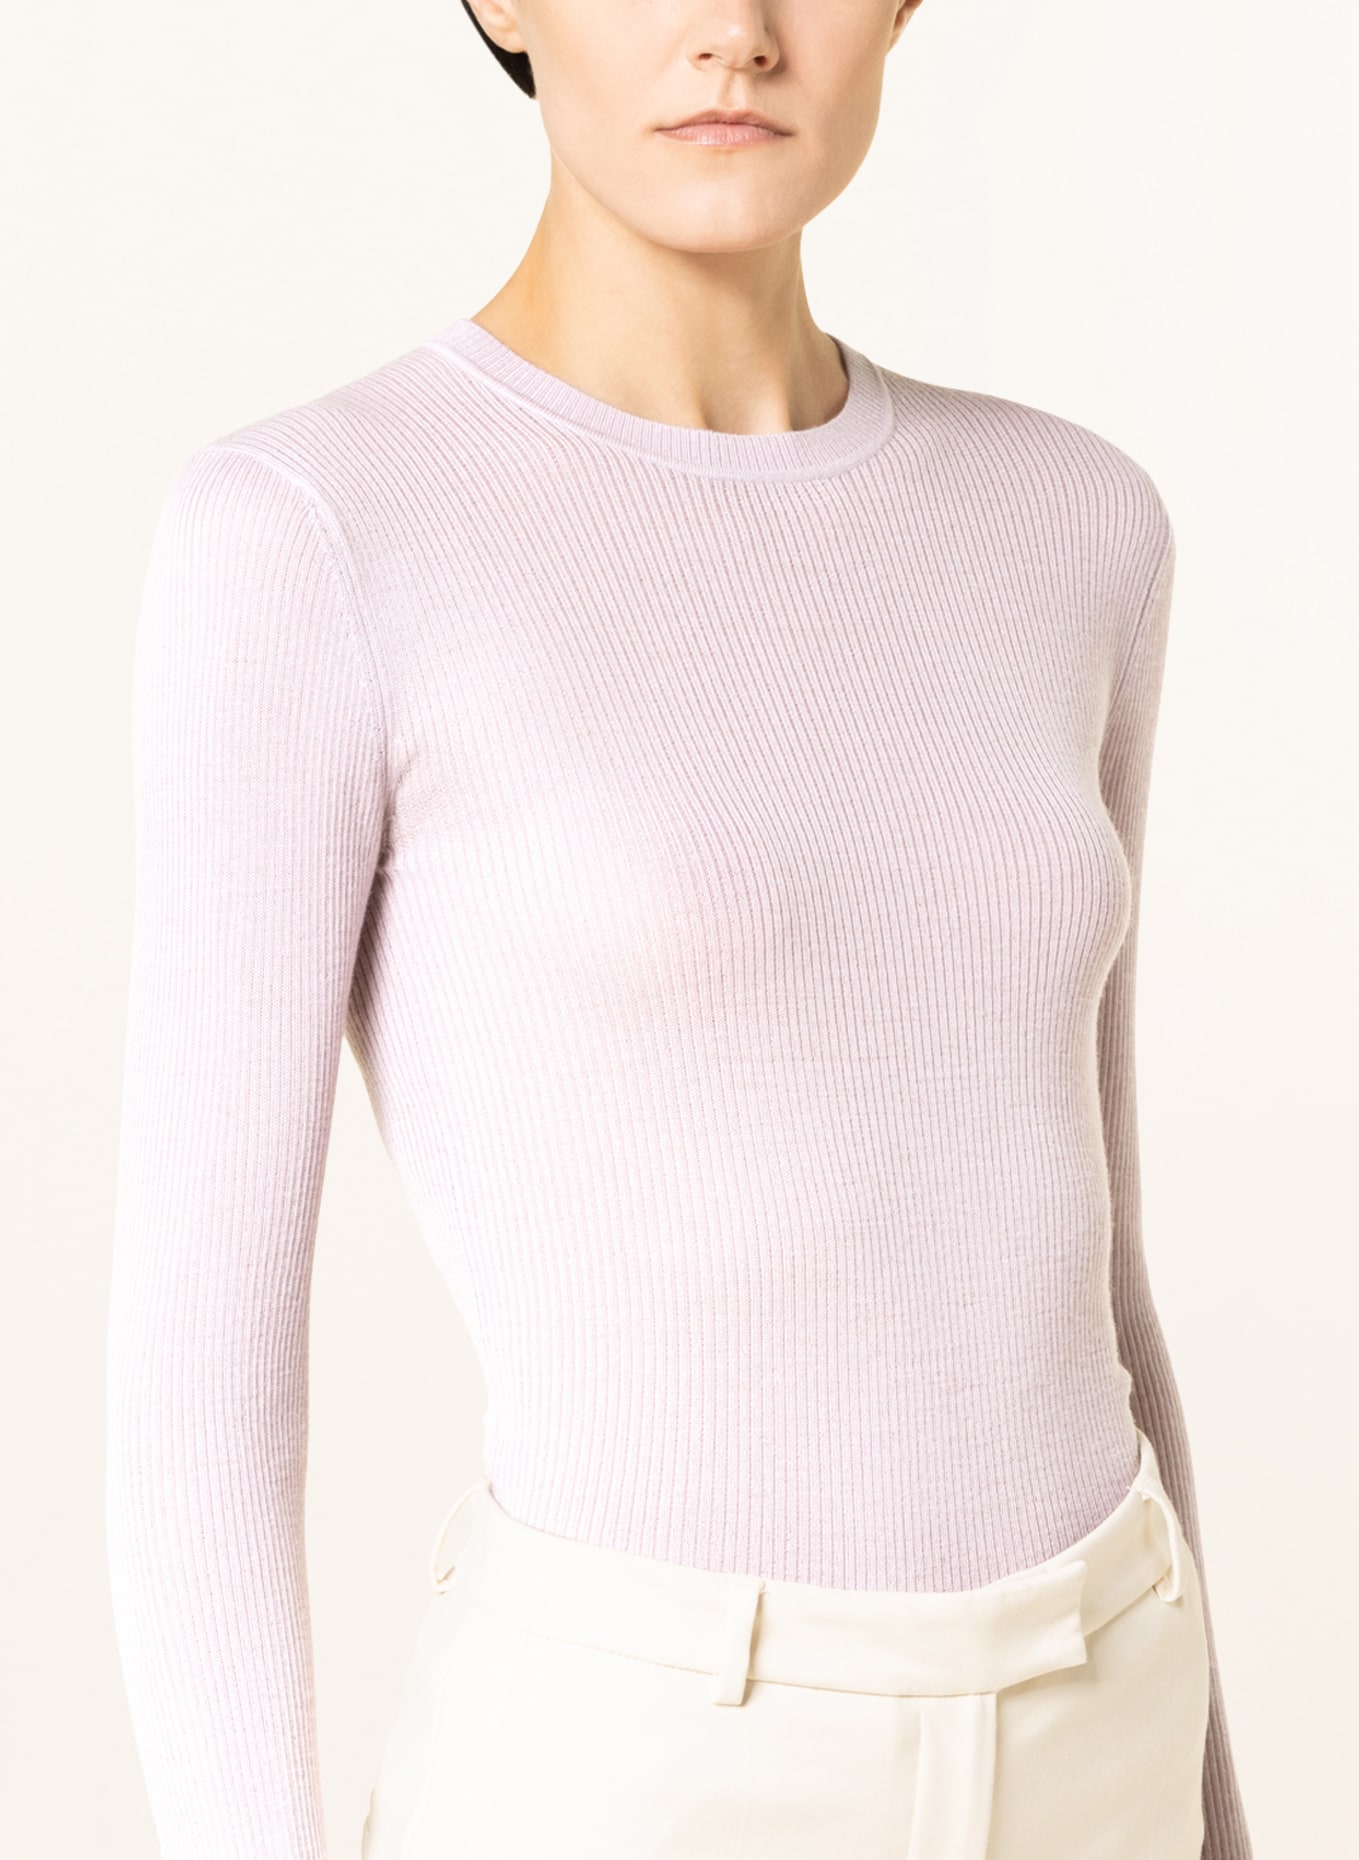 TIGER OF SWEDEN Sweater OVIE, Color: ROSE (Image 4)